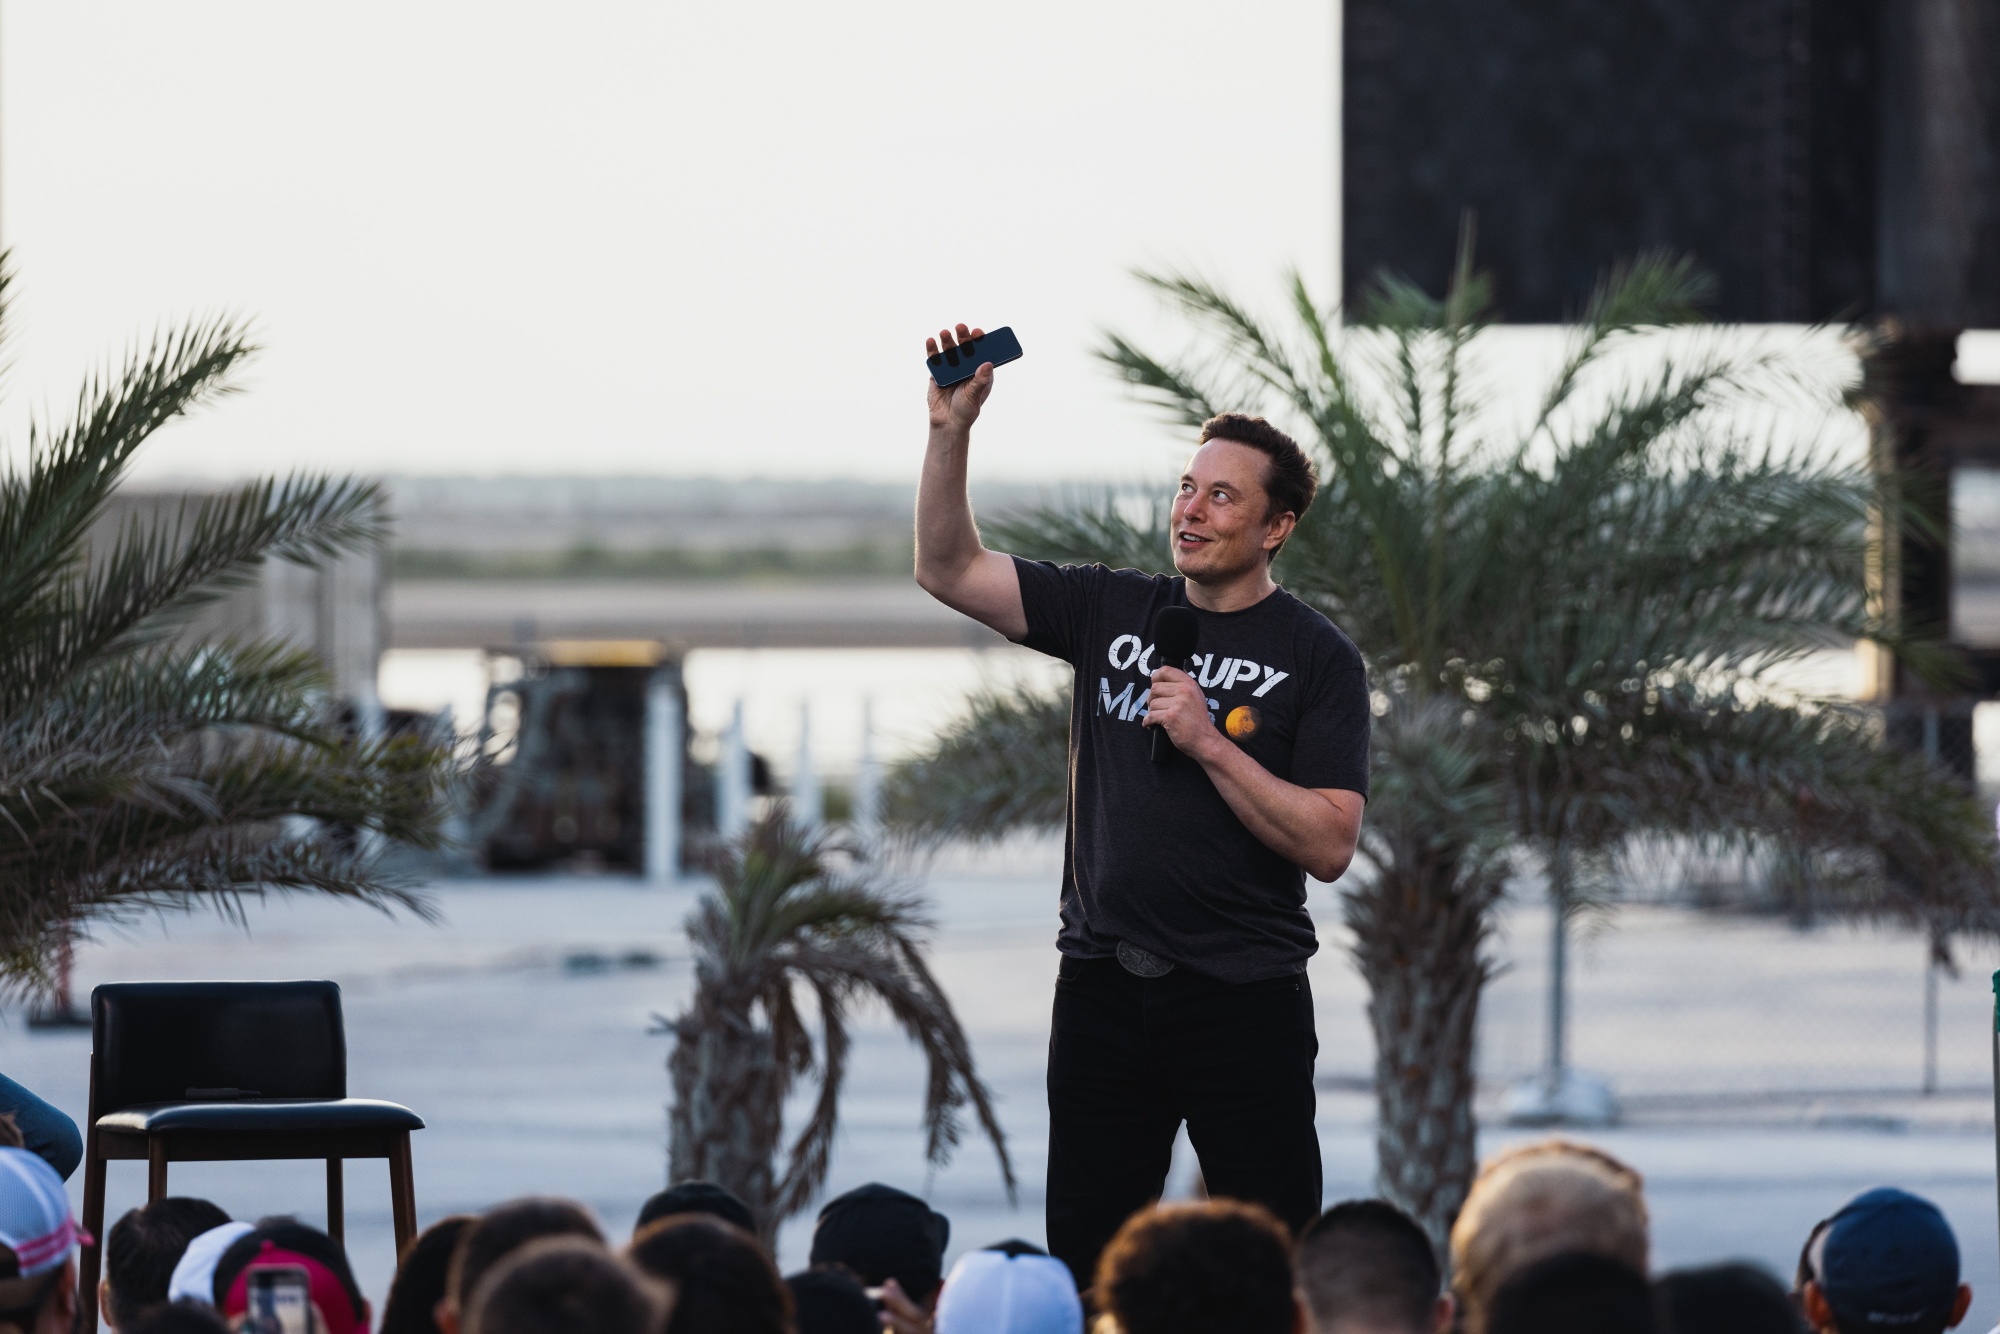 Elon Musk vs Mark Zuckerberg: Odds markets just flipped - Elon